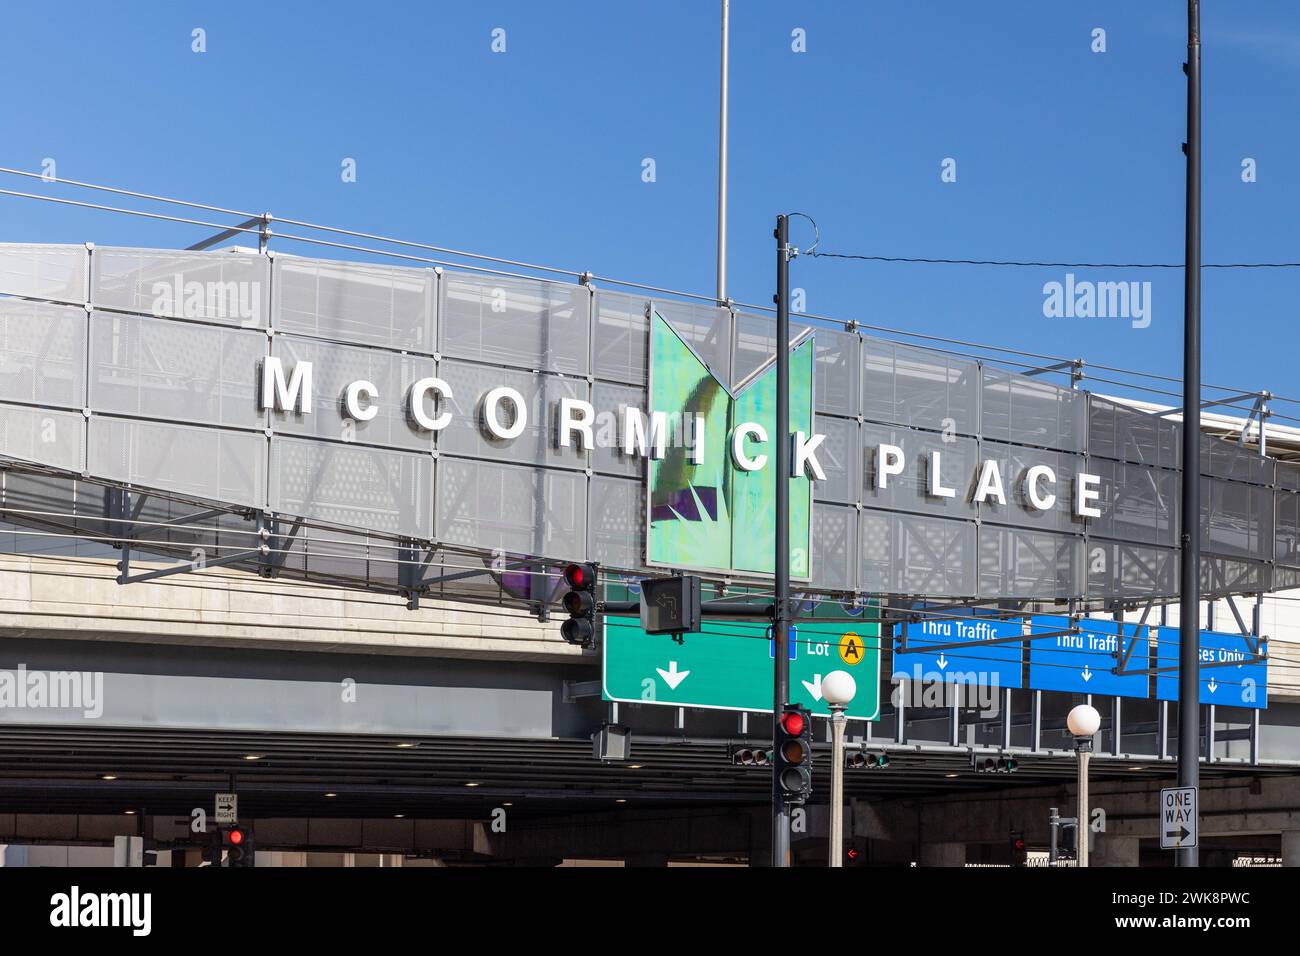 McCormick place Convention Center est le plus grand centre de congrès en Amérique du Nord avec 2,6 millions de pieds carrés d'espace d'exposition. Banque D'Images